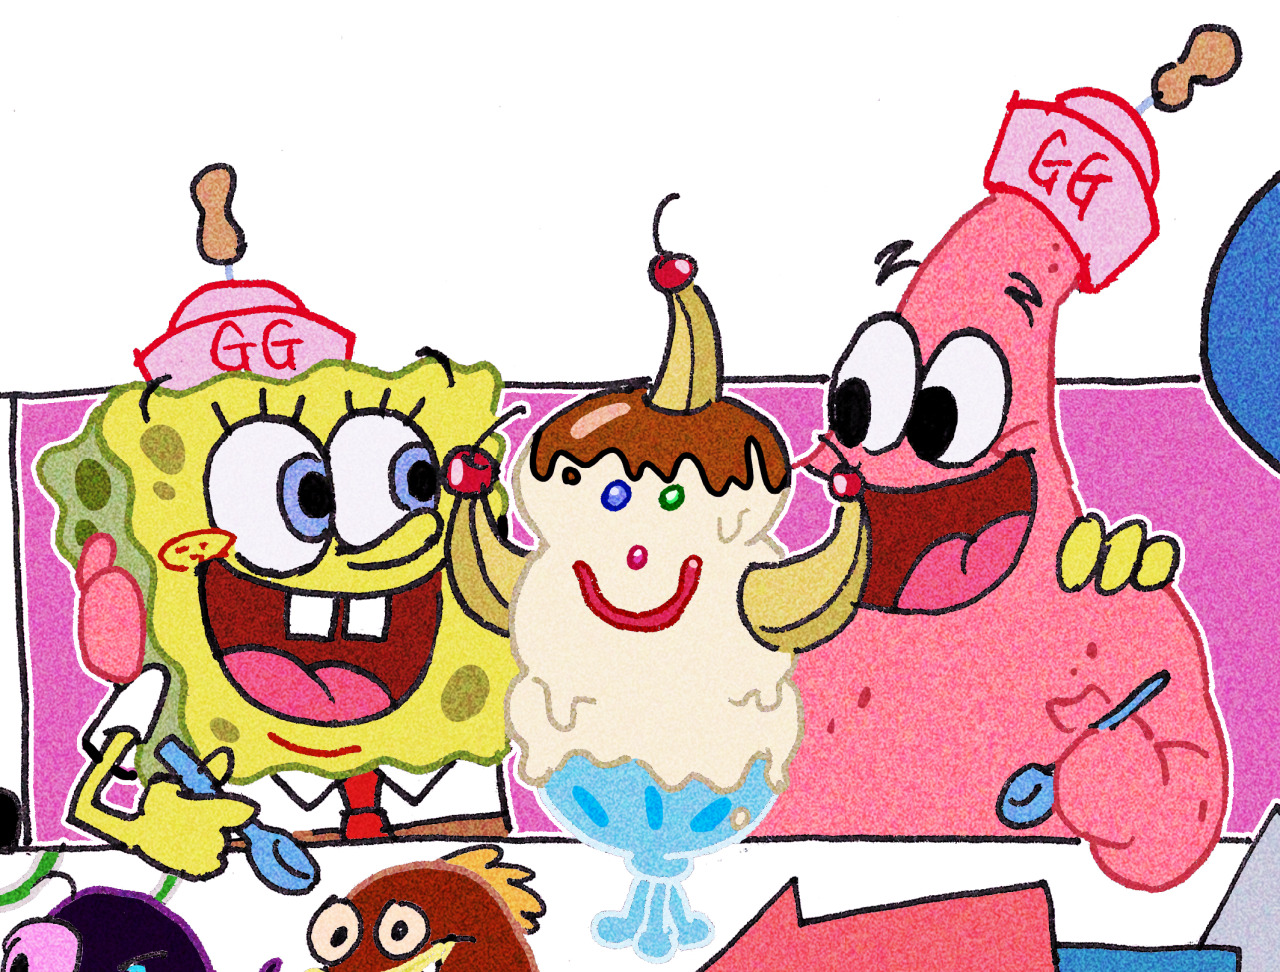 SpongeBob movie 1 doodles #doodle#fanart#myart#spongebob#spongebob squarepants#nickelodeon#nicktoon#movie#movie 1#spongebob movie#cartoon